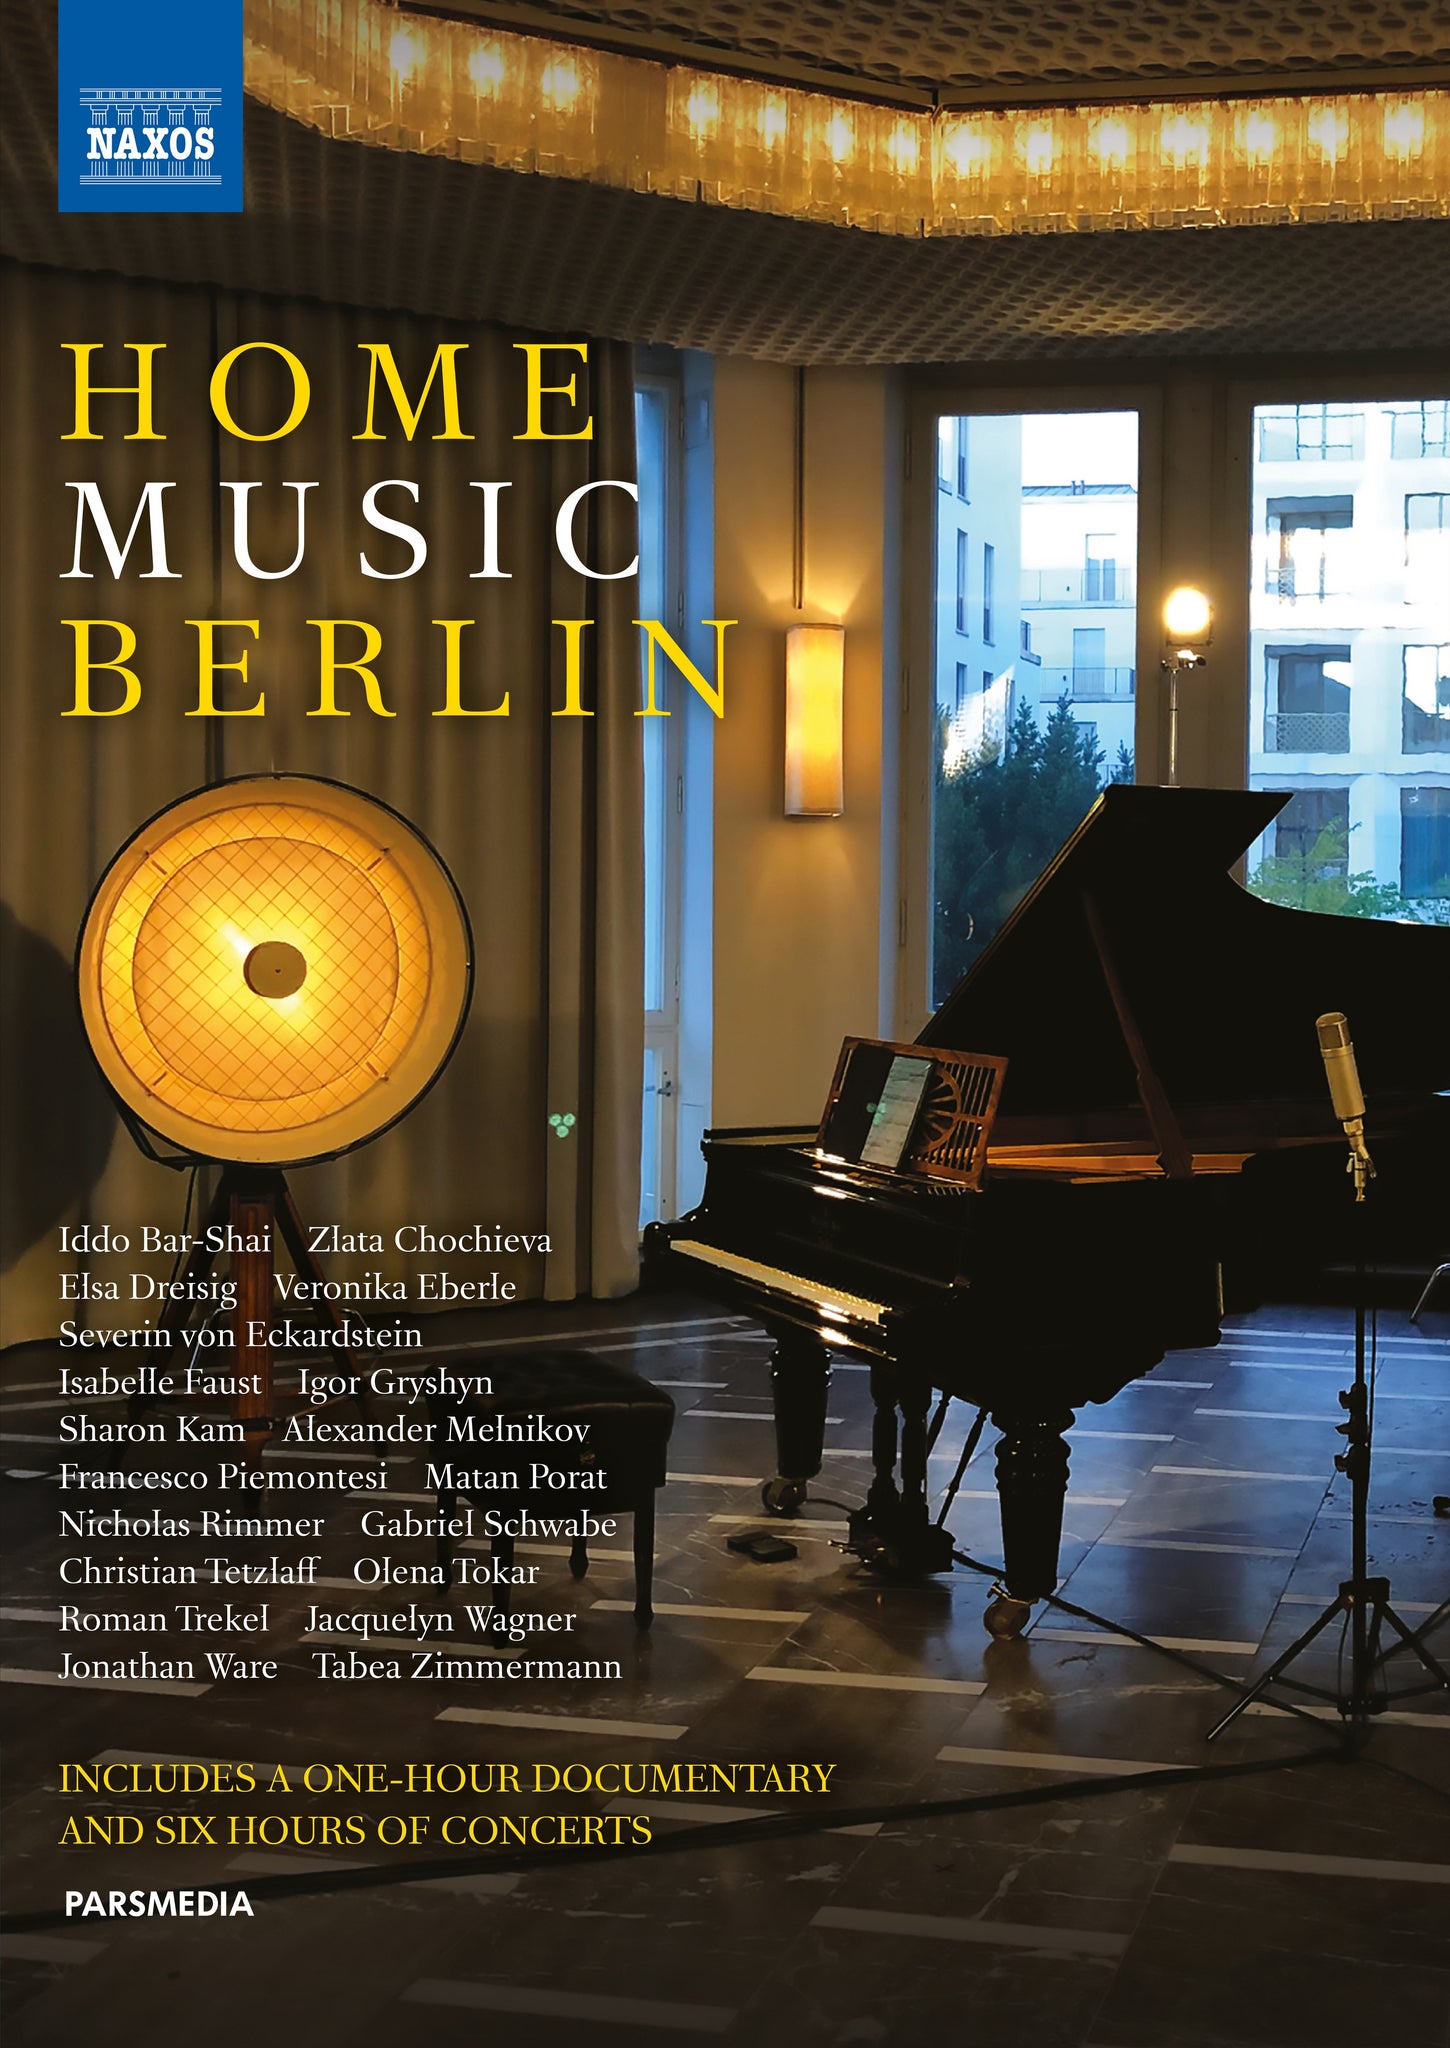 Home Music Berlin / Piemontosi, Schmidt-Garre